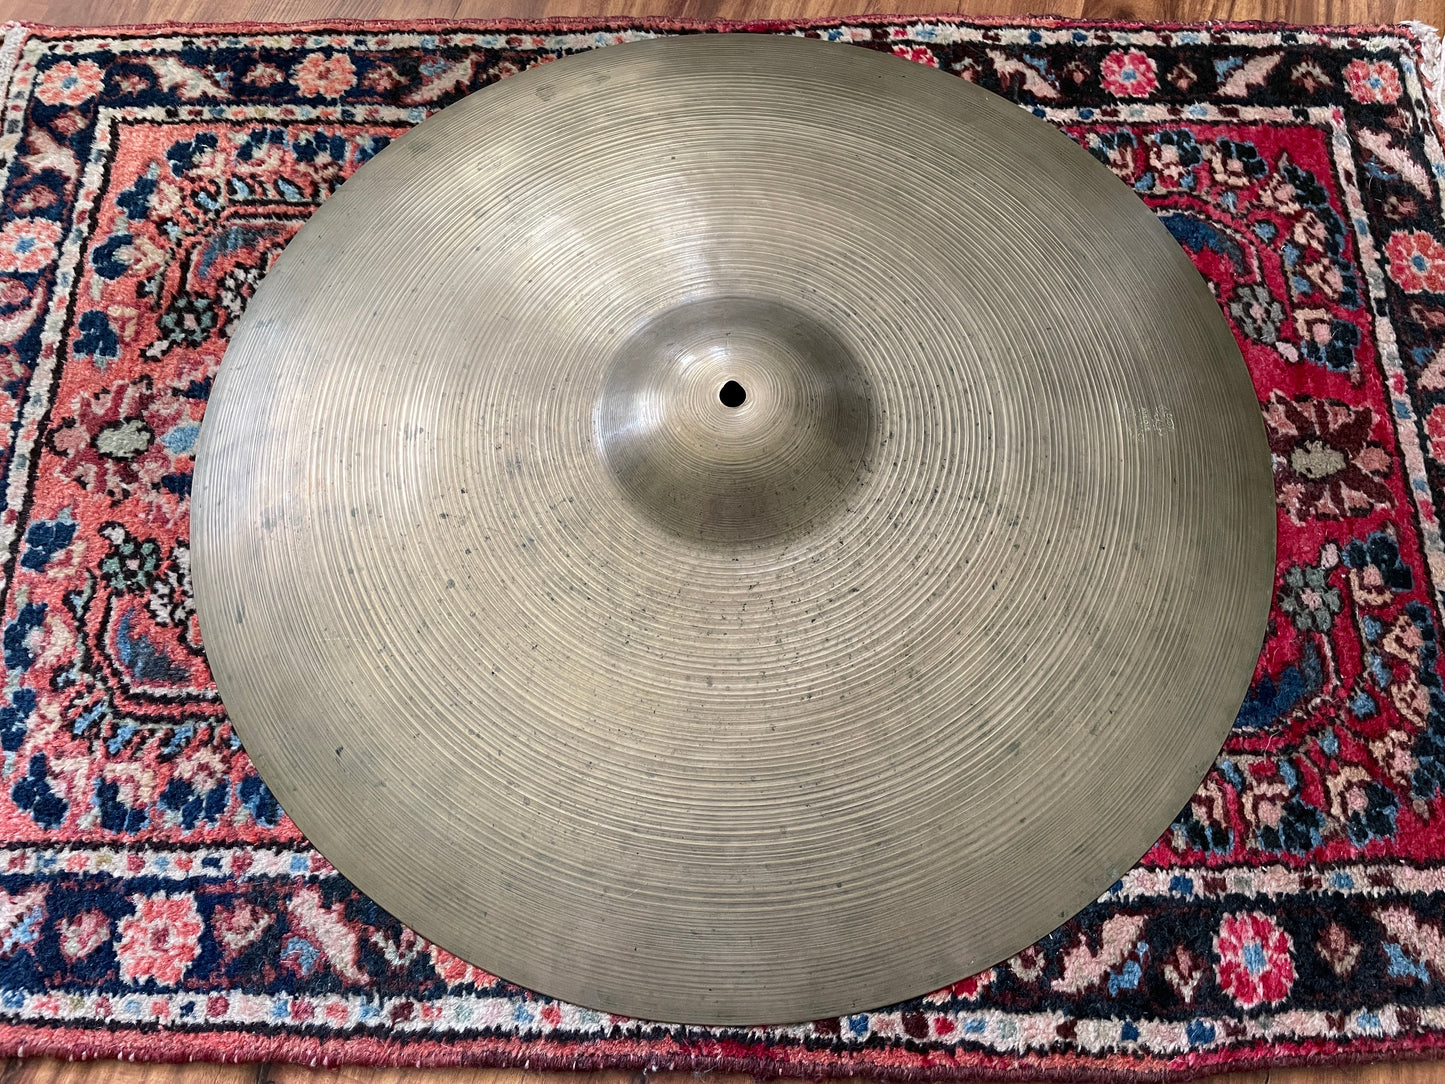 22" Zildjian A 1960s Ride Cymbal 2554g #778 *Video Demo*